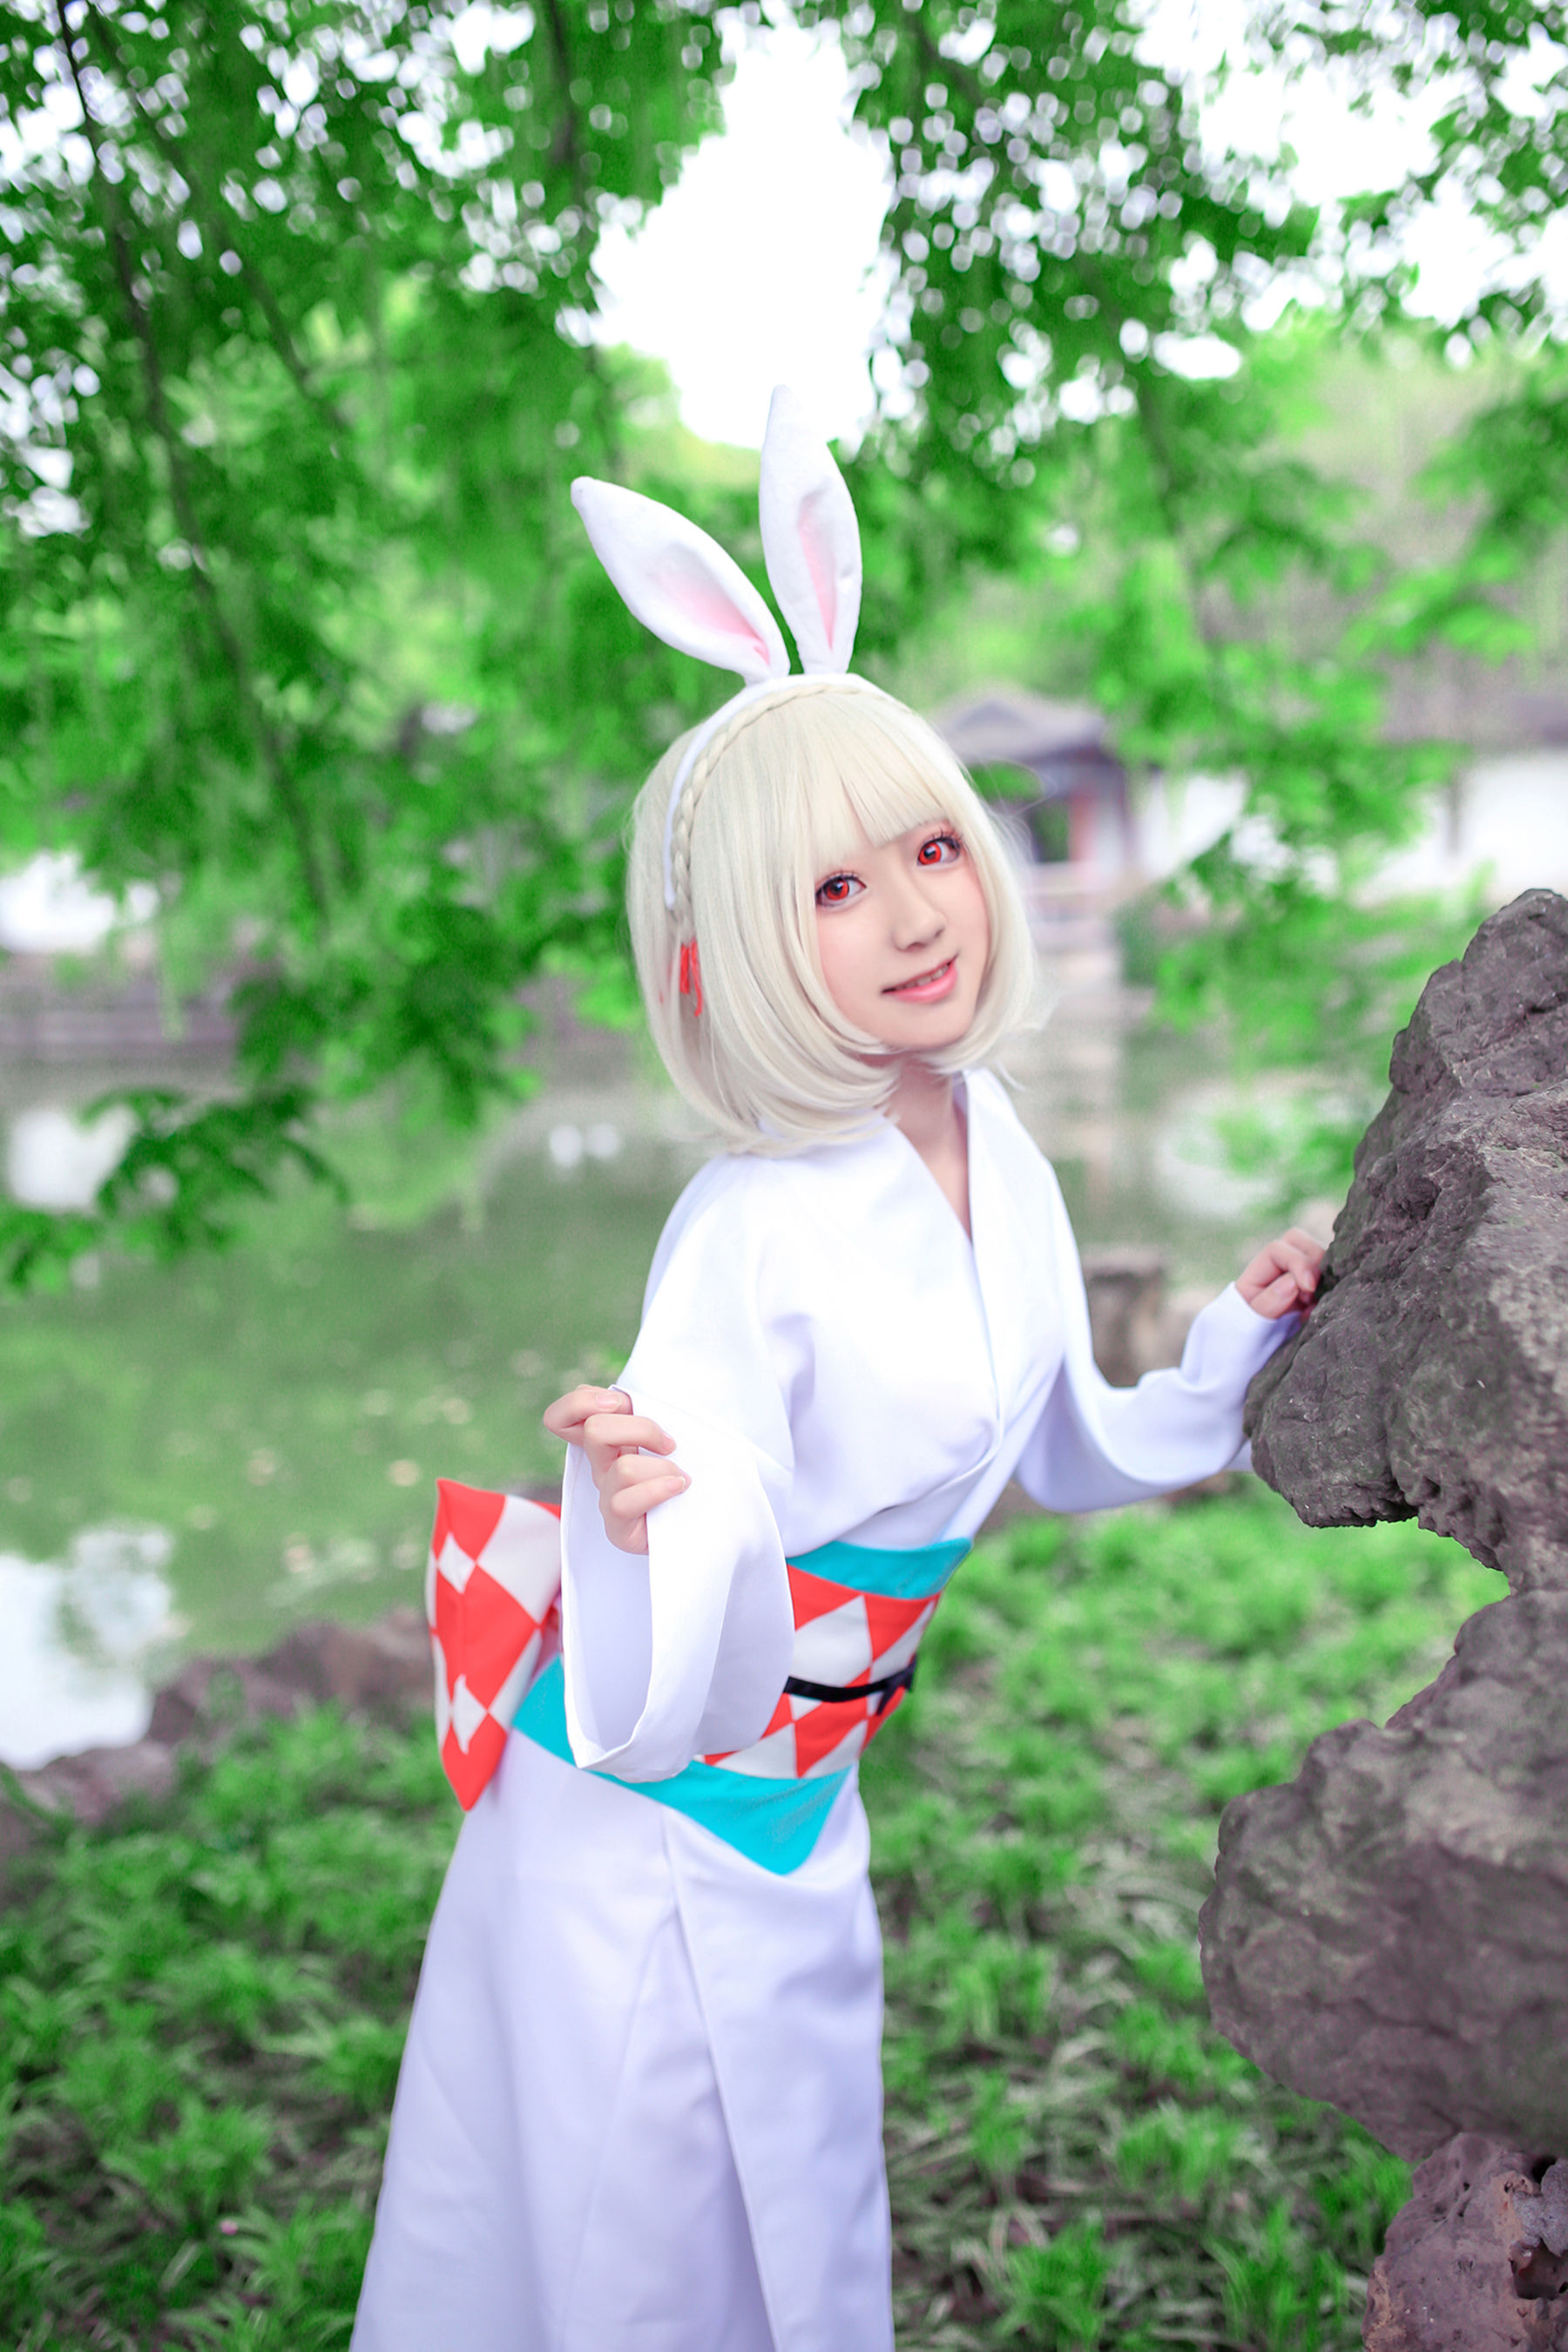 [Foto cosplay] Blogger di anime Xianyin sic - Onmyoji Mountain Rabbit Pagina 1 No.b27d1a